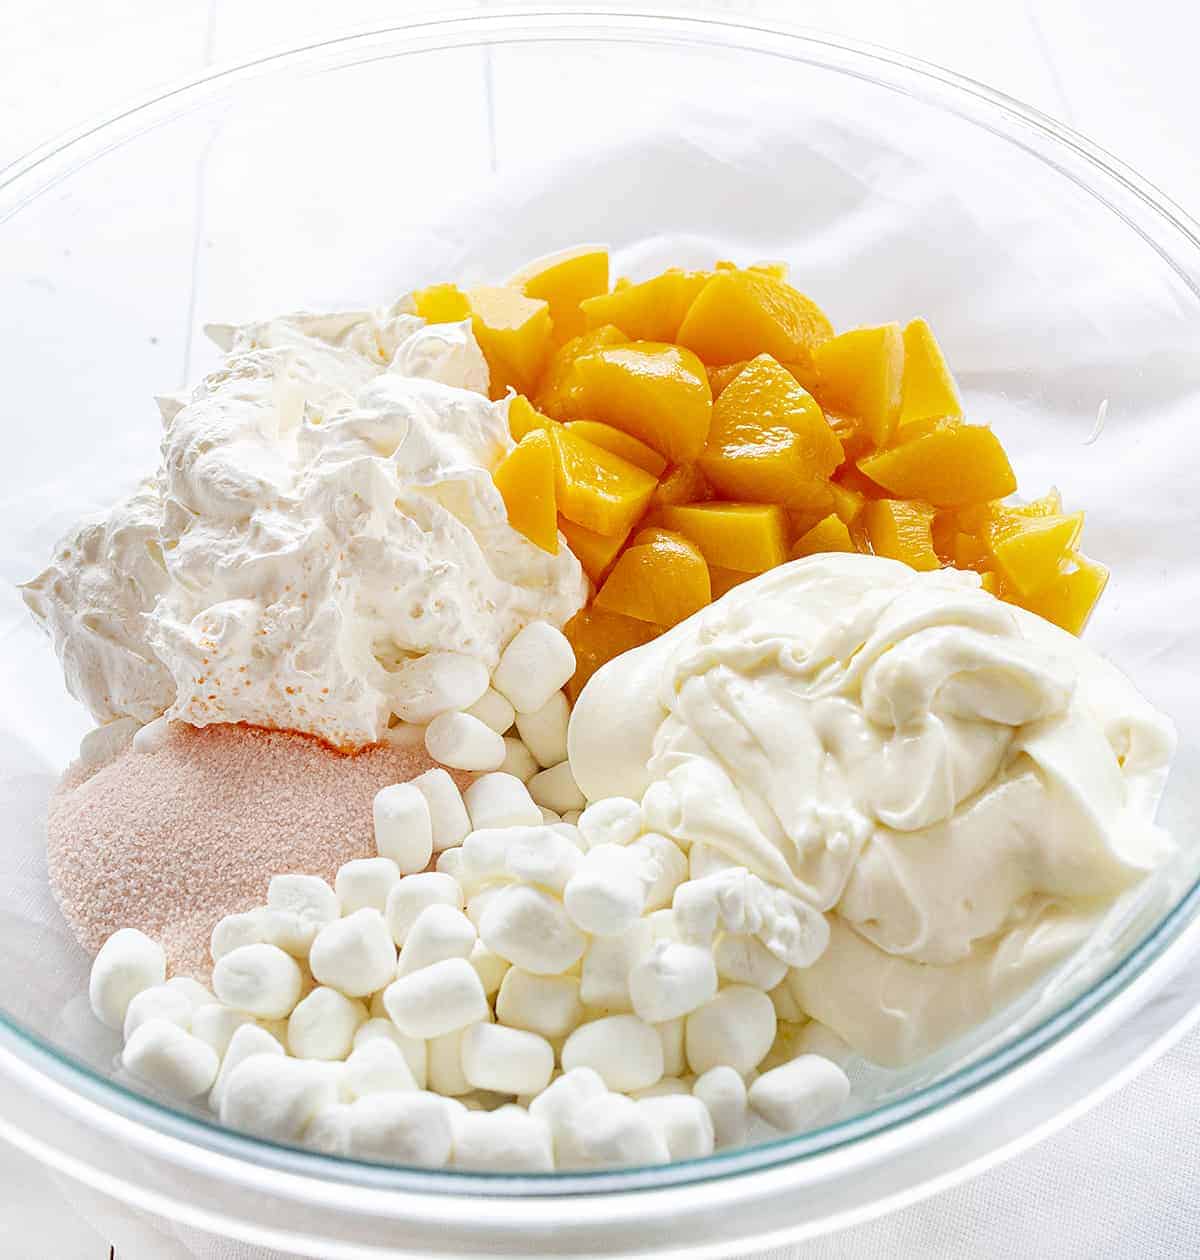 Ingredients for Peach Dessert Salad